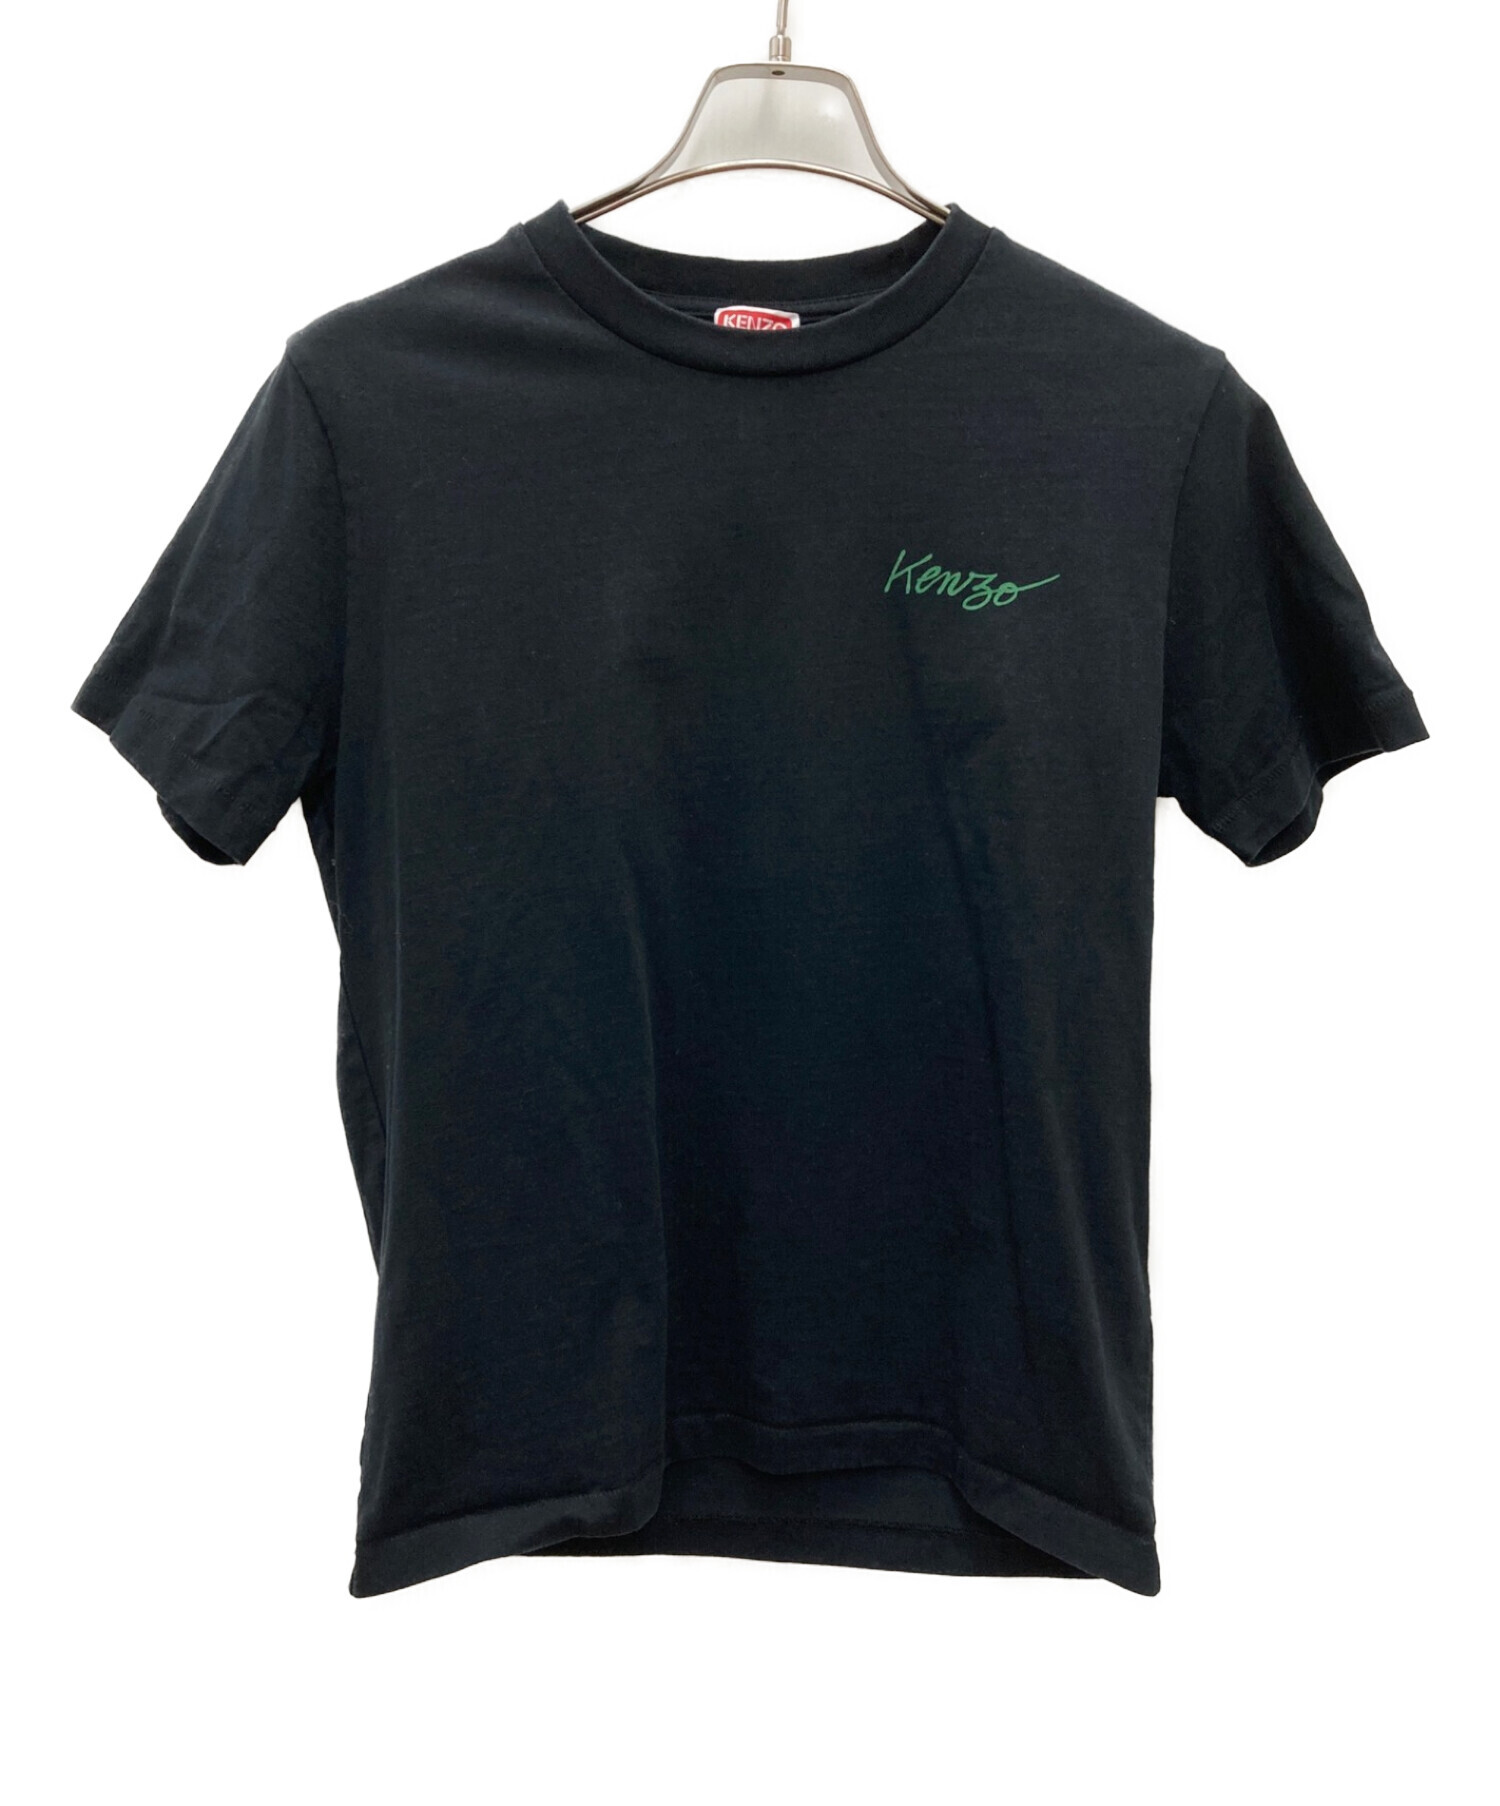 KENZO (ケンゾー) Tシャツ ブラック サイズ:S